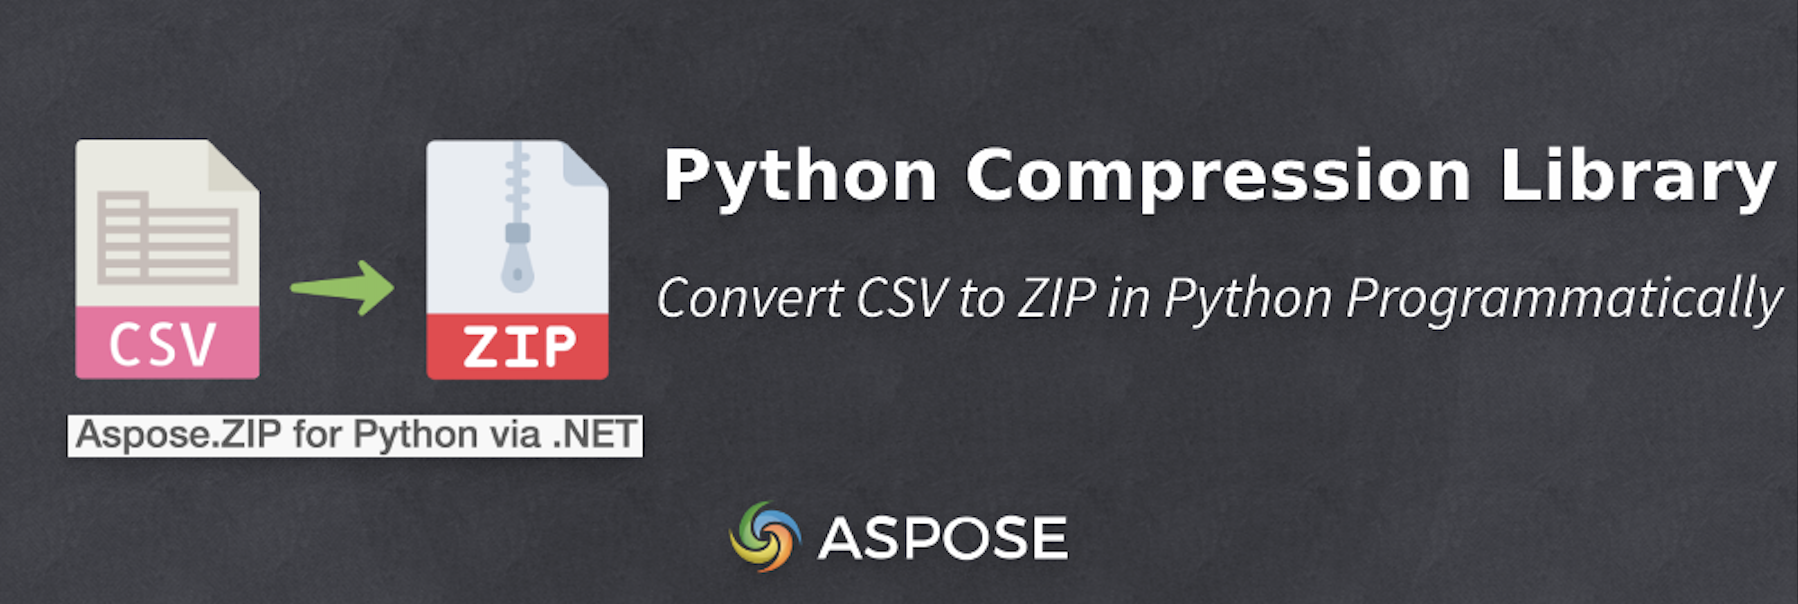 在 Python 中压缩 CSV 文件 - CSV 到 ZIP